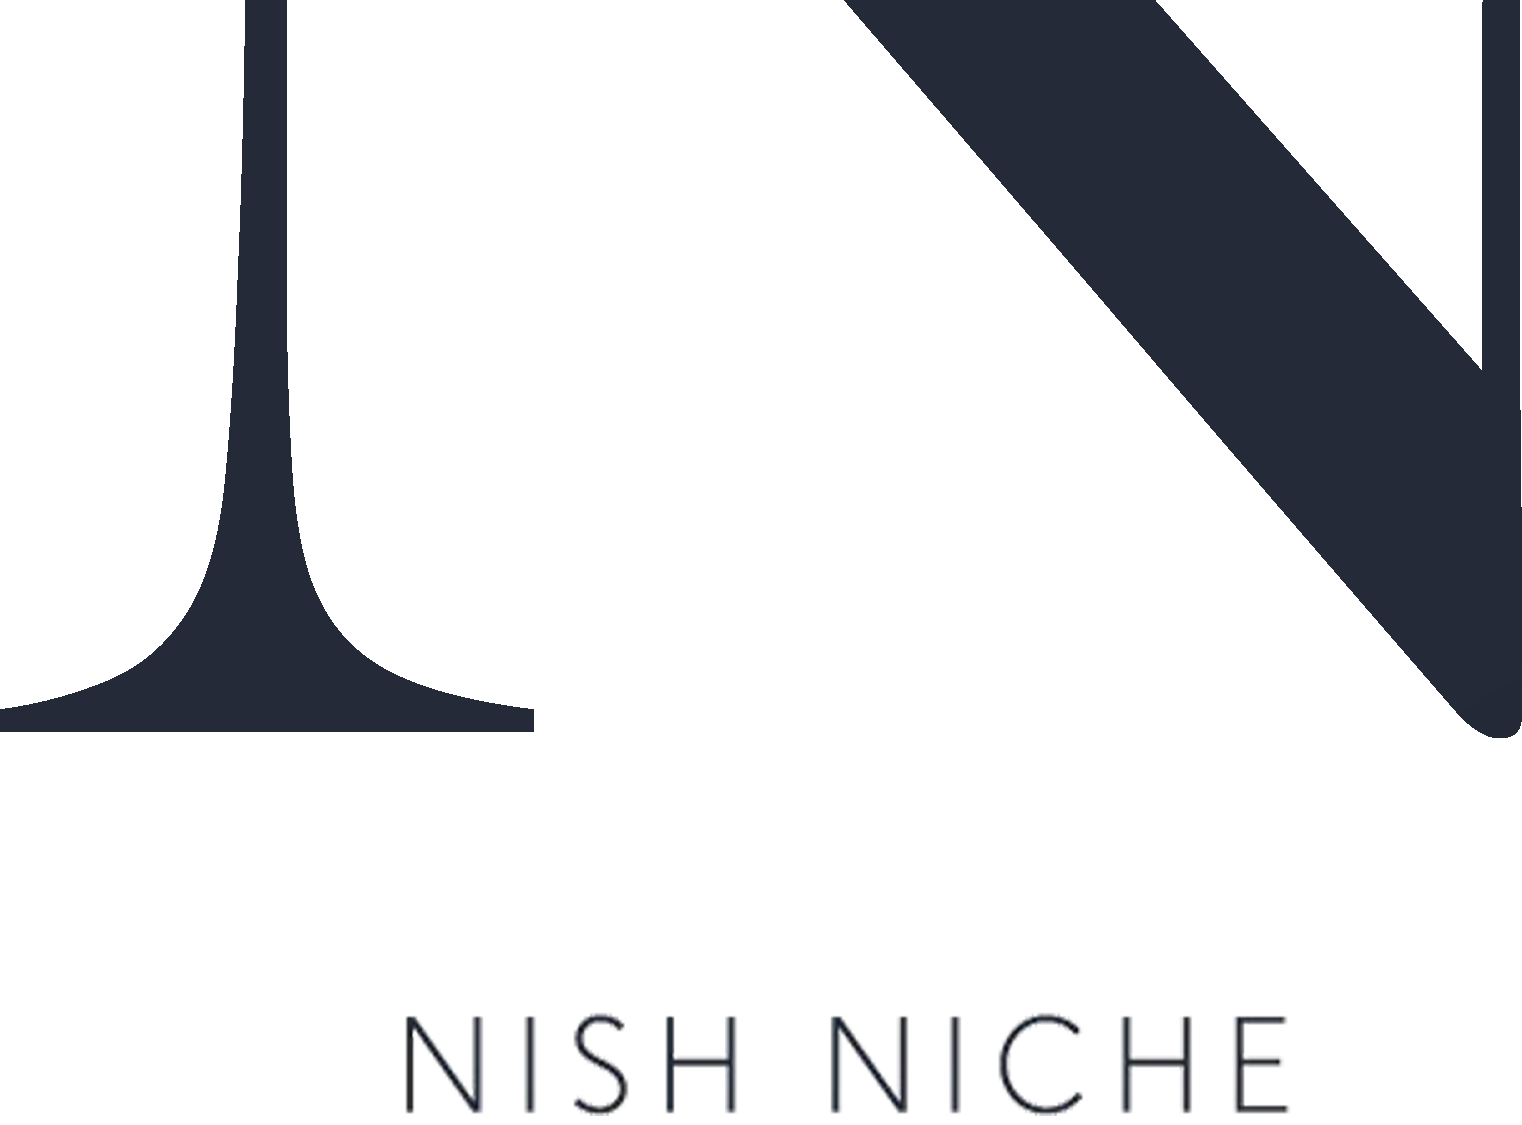 Nish Niche